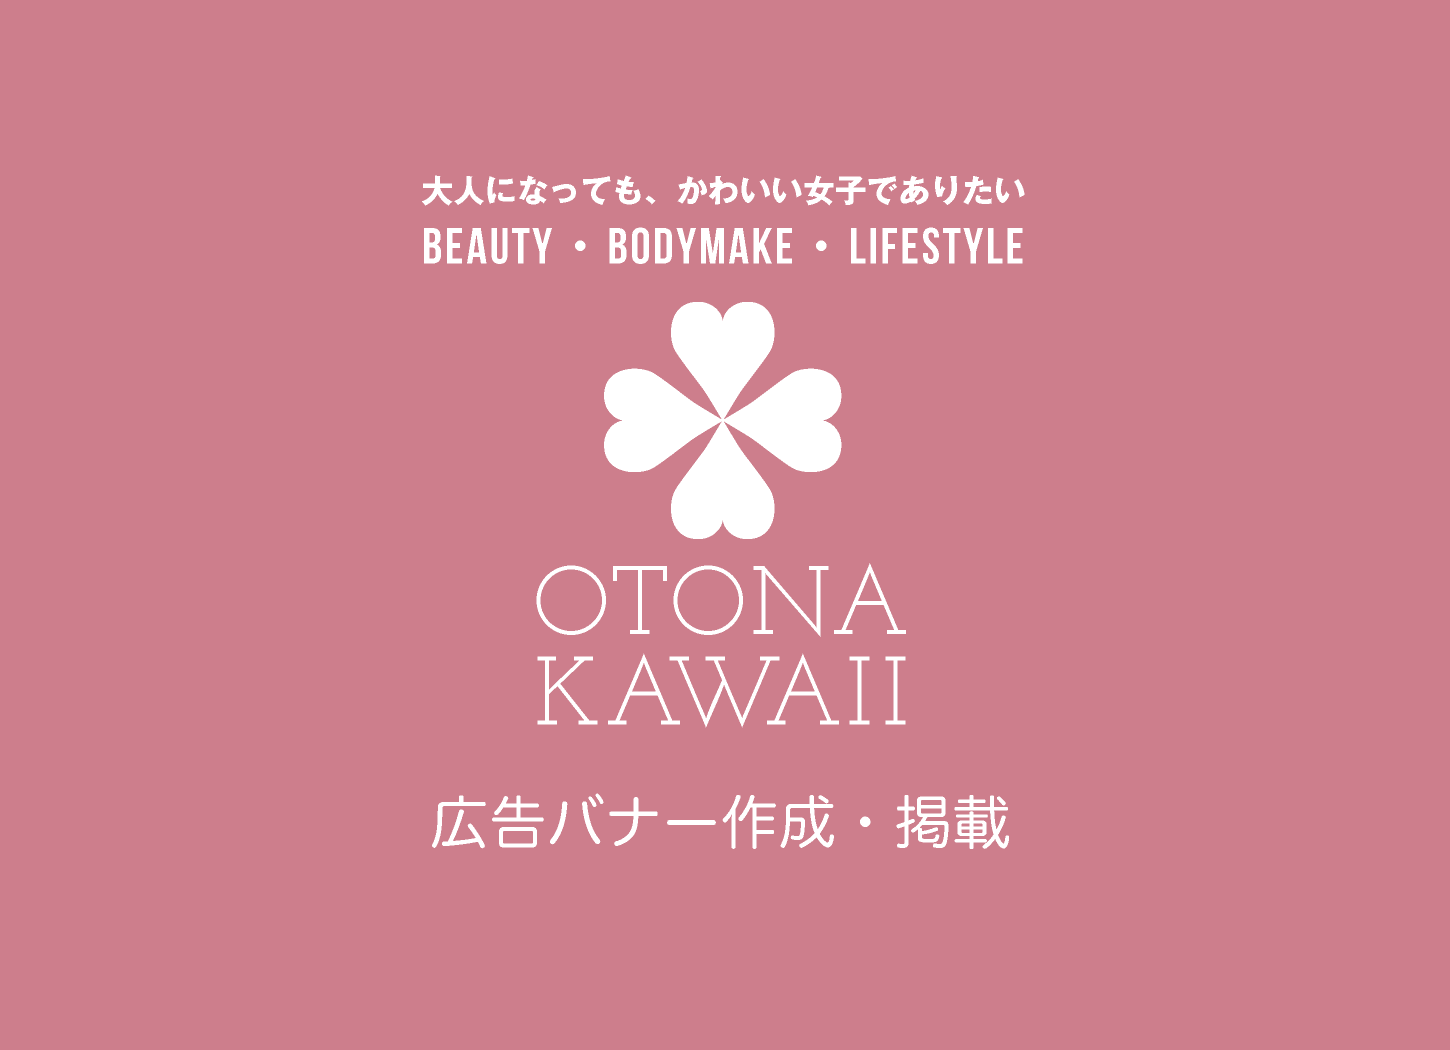 広告バナー作成・掲載｜otona-kawaii.com｜大人になっても、かわいい女子でありたい｜Beauty・Bodymake・Lifestyle｜美容・健康・ライフスタイル